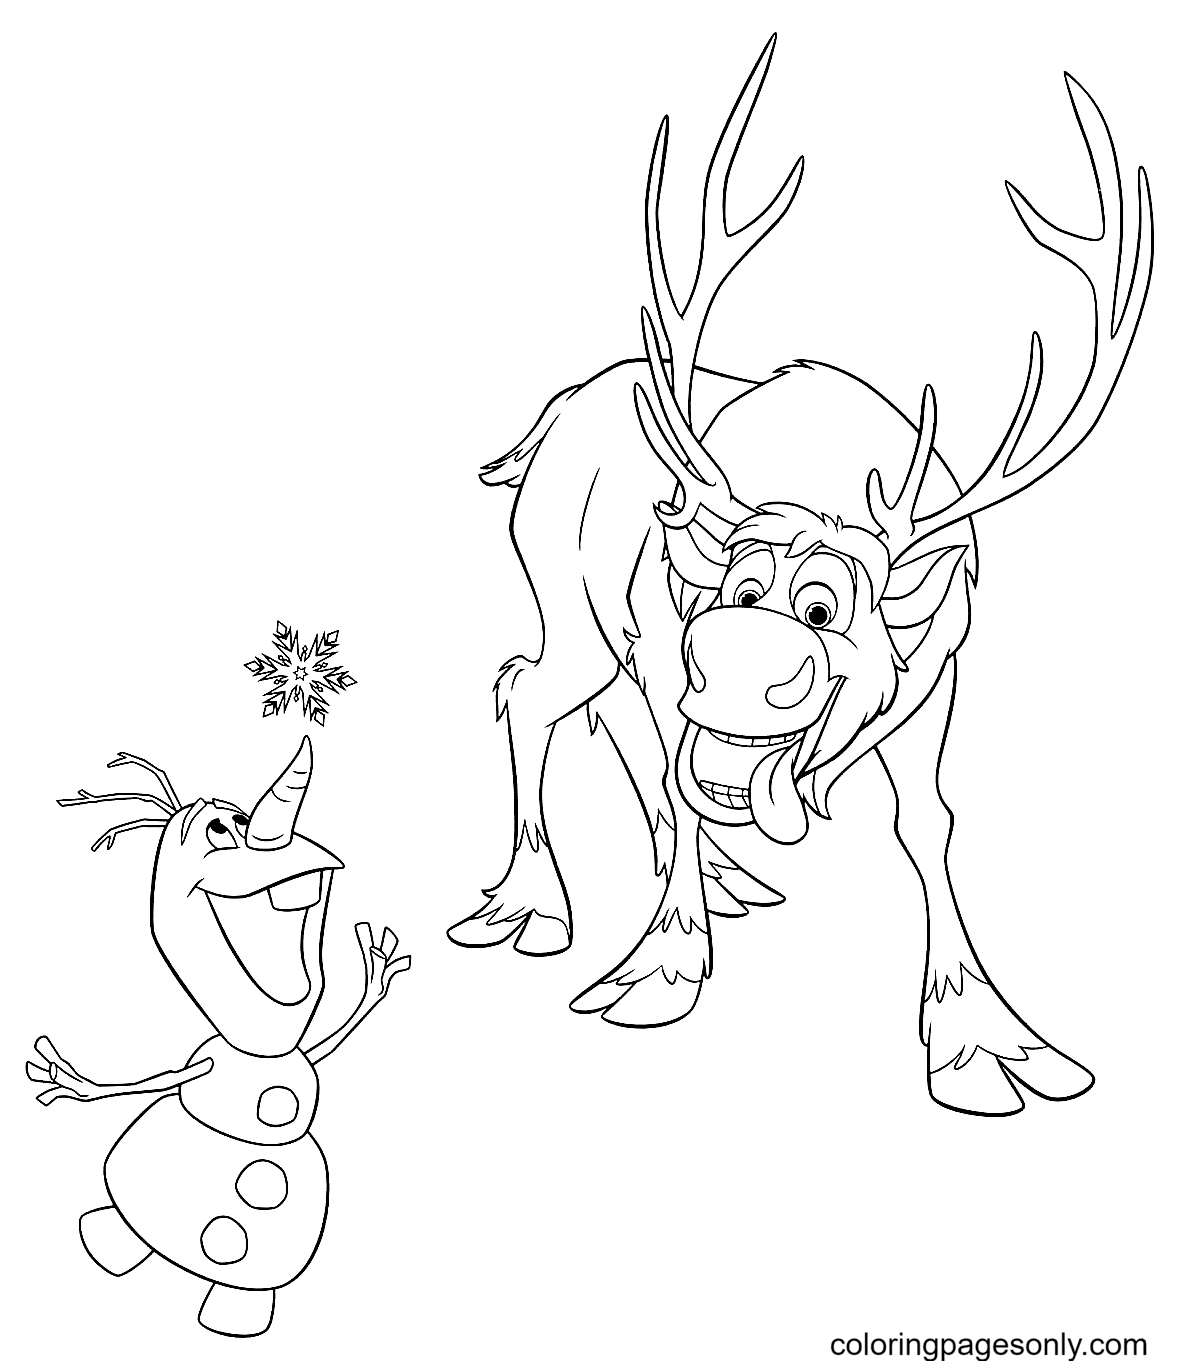 Sven e Olaf pegam flocos de neve de Olaf